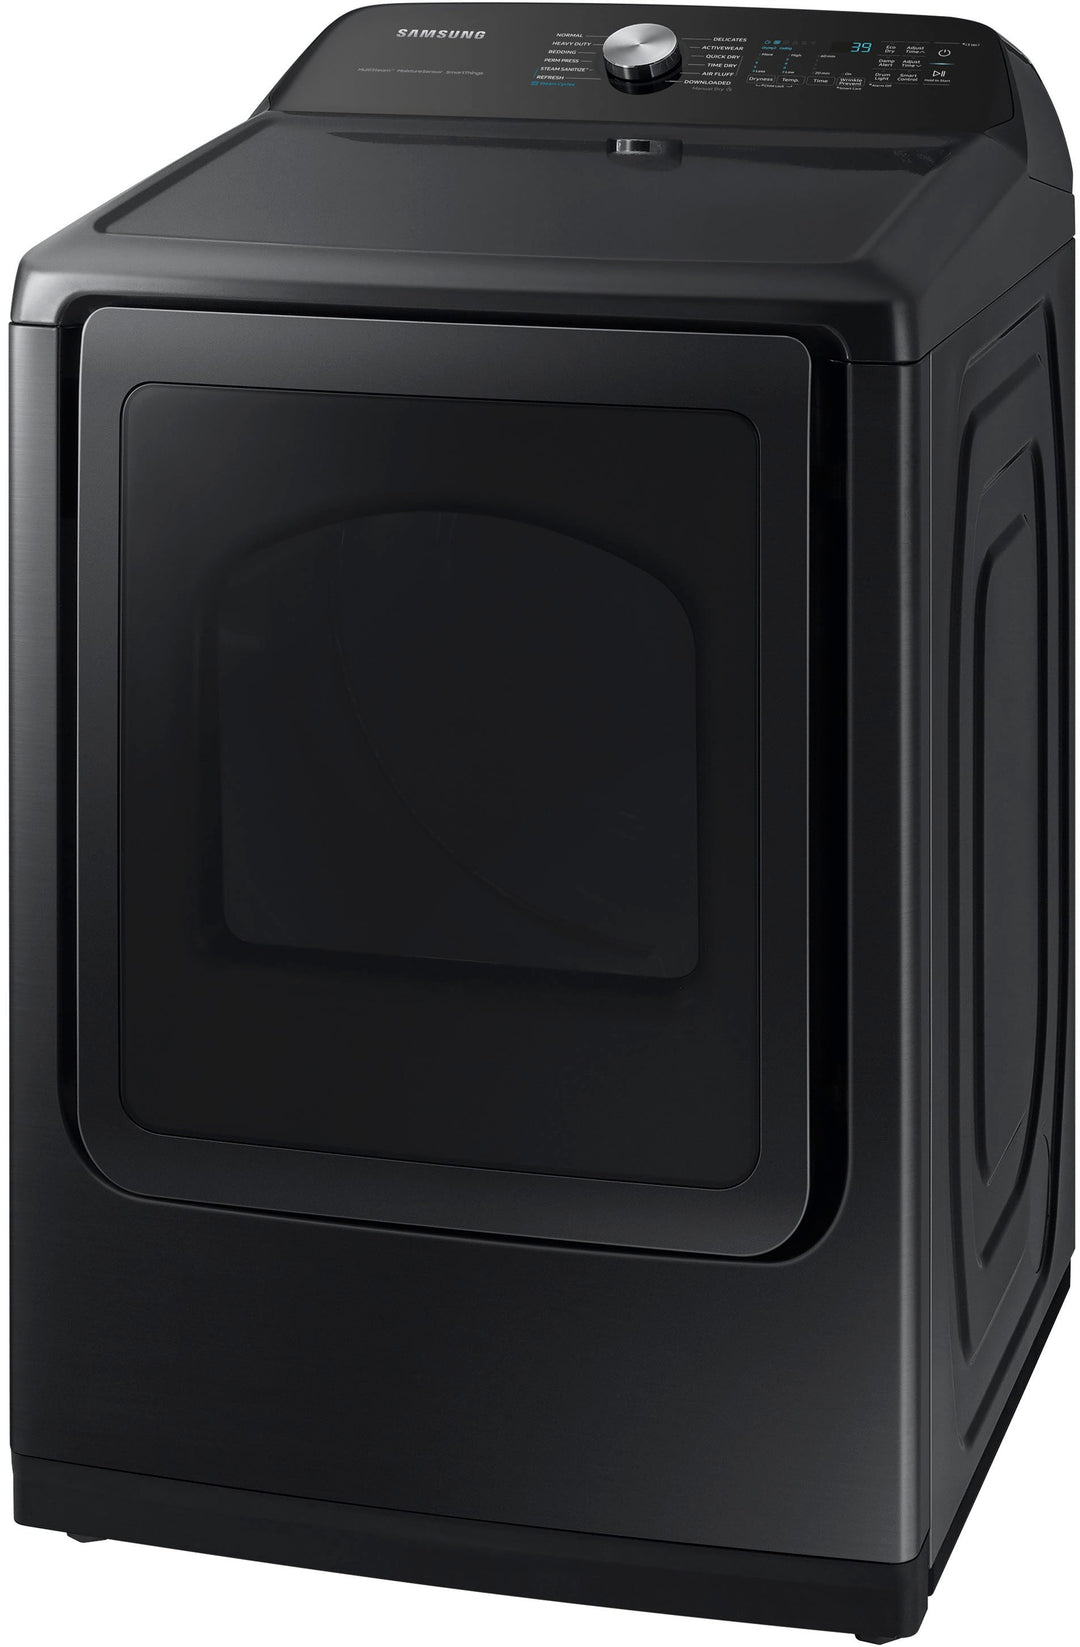 Samsung - 7.4 cu. ft. Smart Gas Dryer with Steam Sanitize+ - Brushed black_3